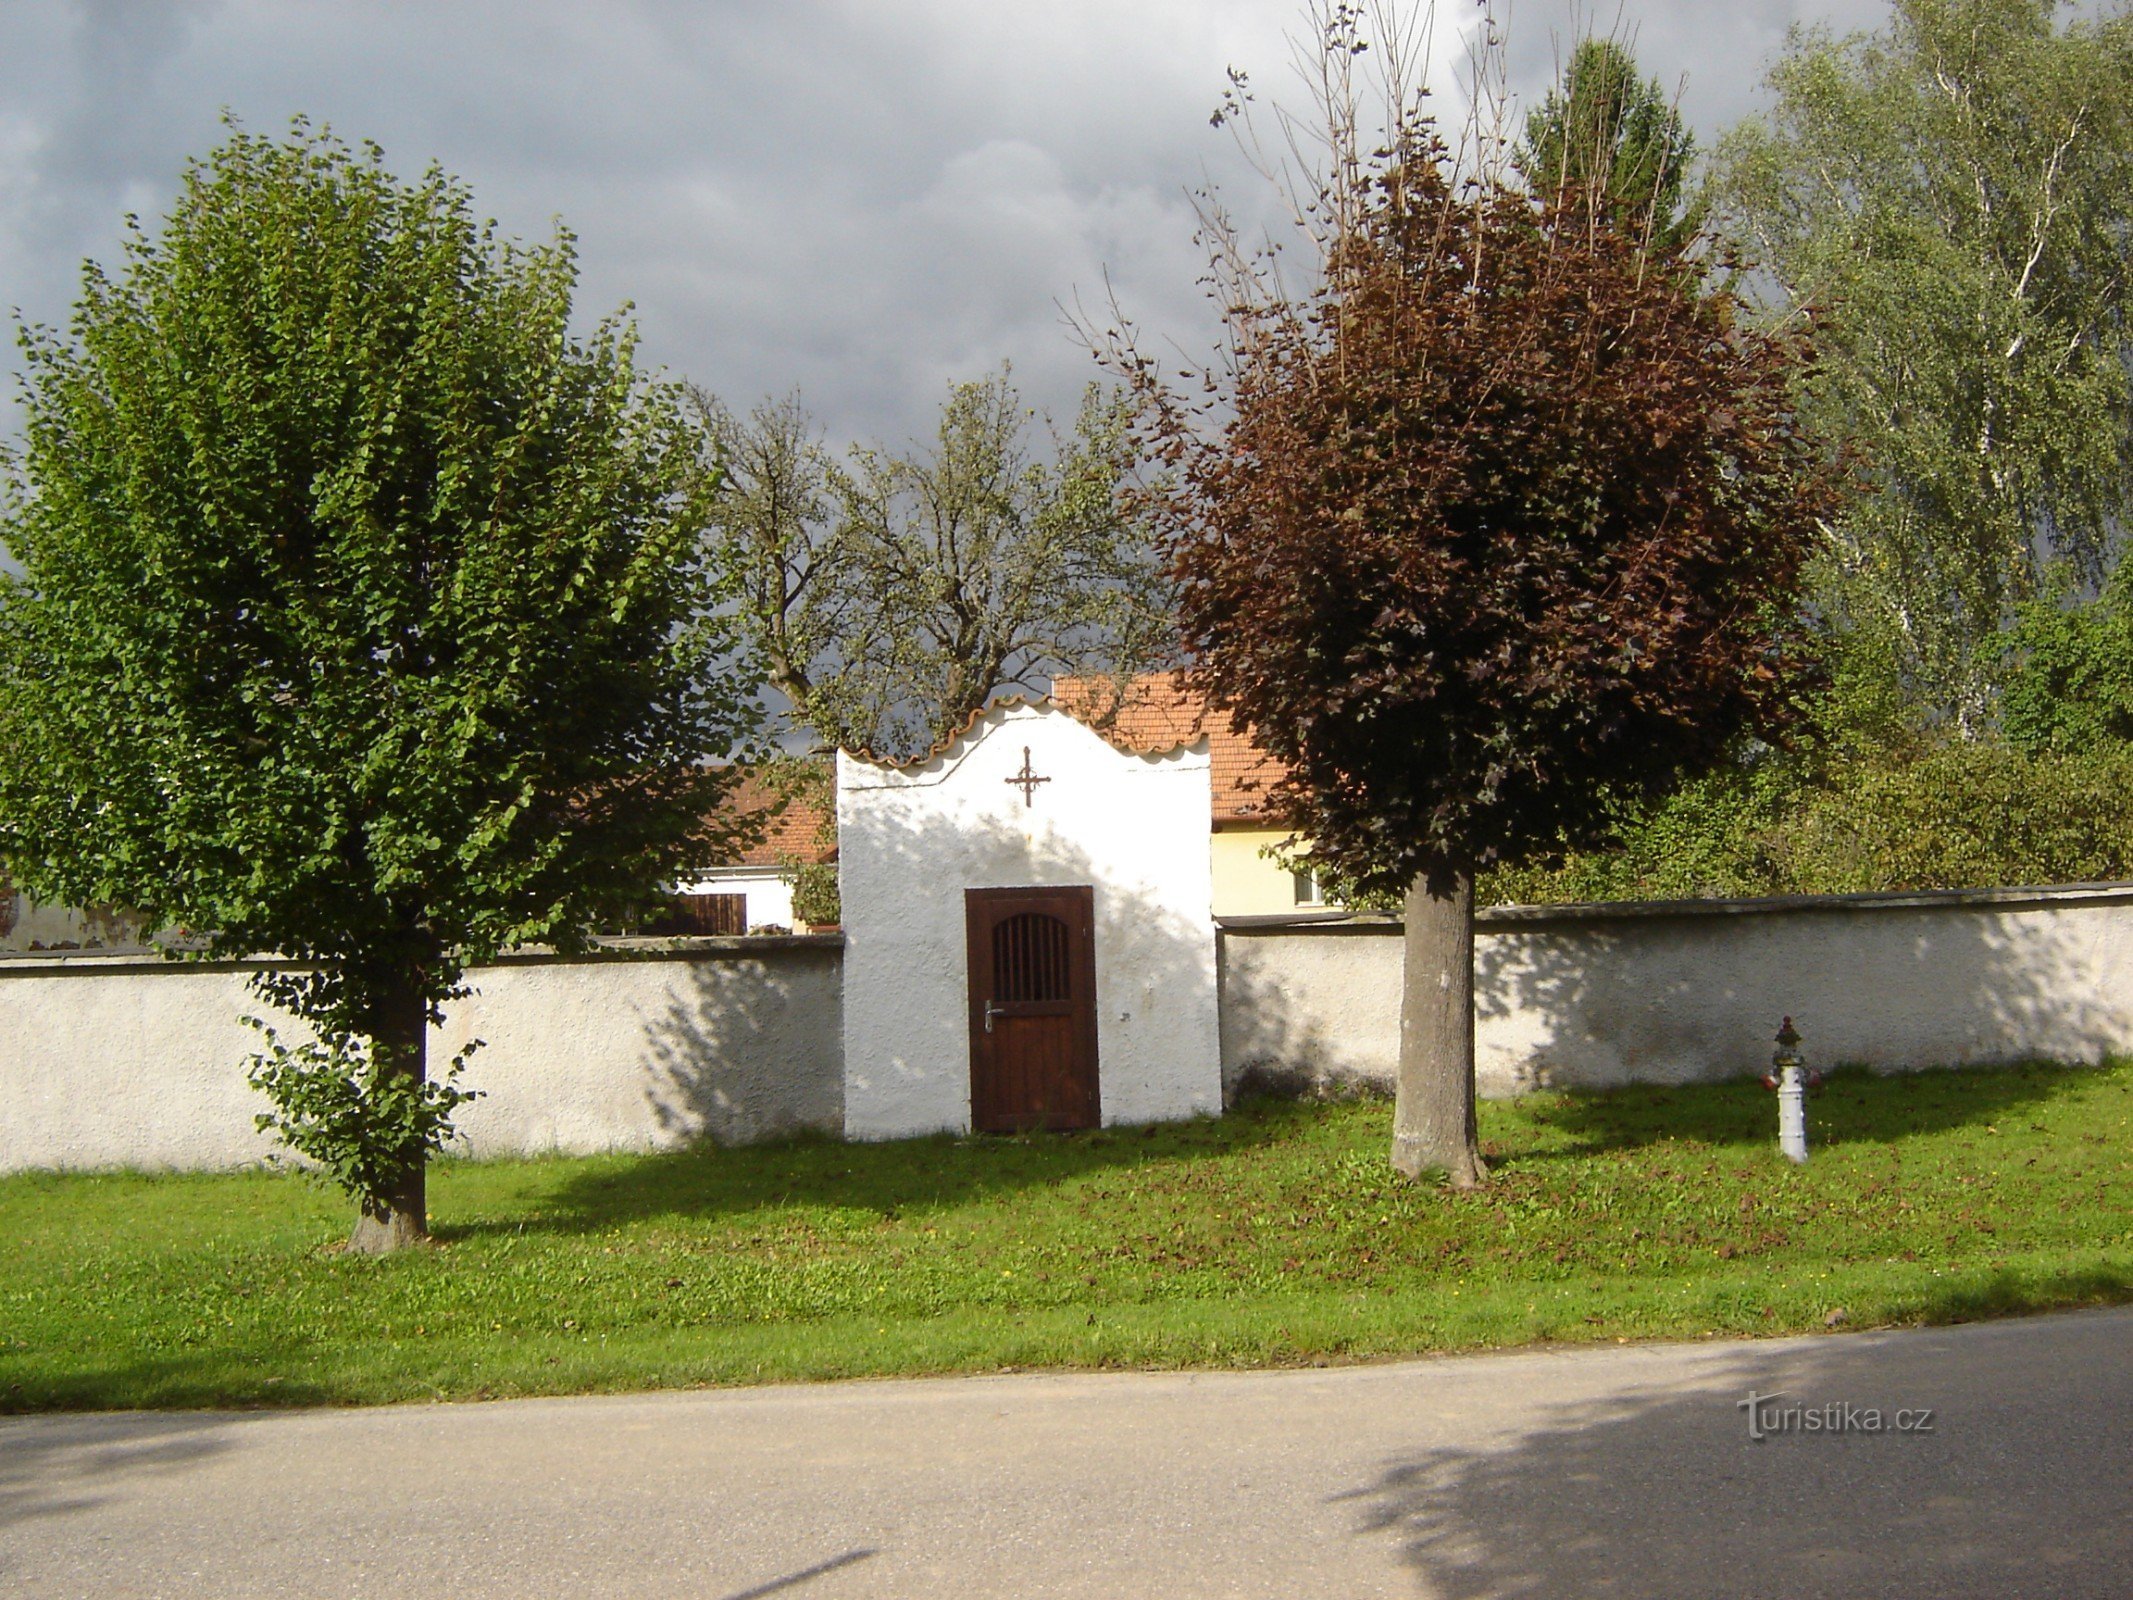 brick chapel at no. 15 Haškovcova Lhota